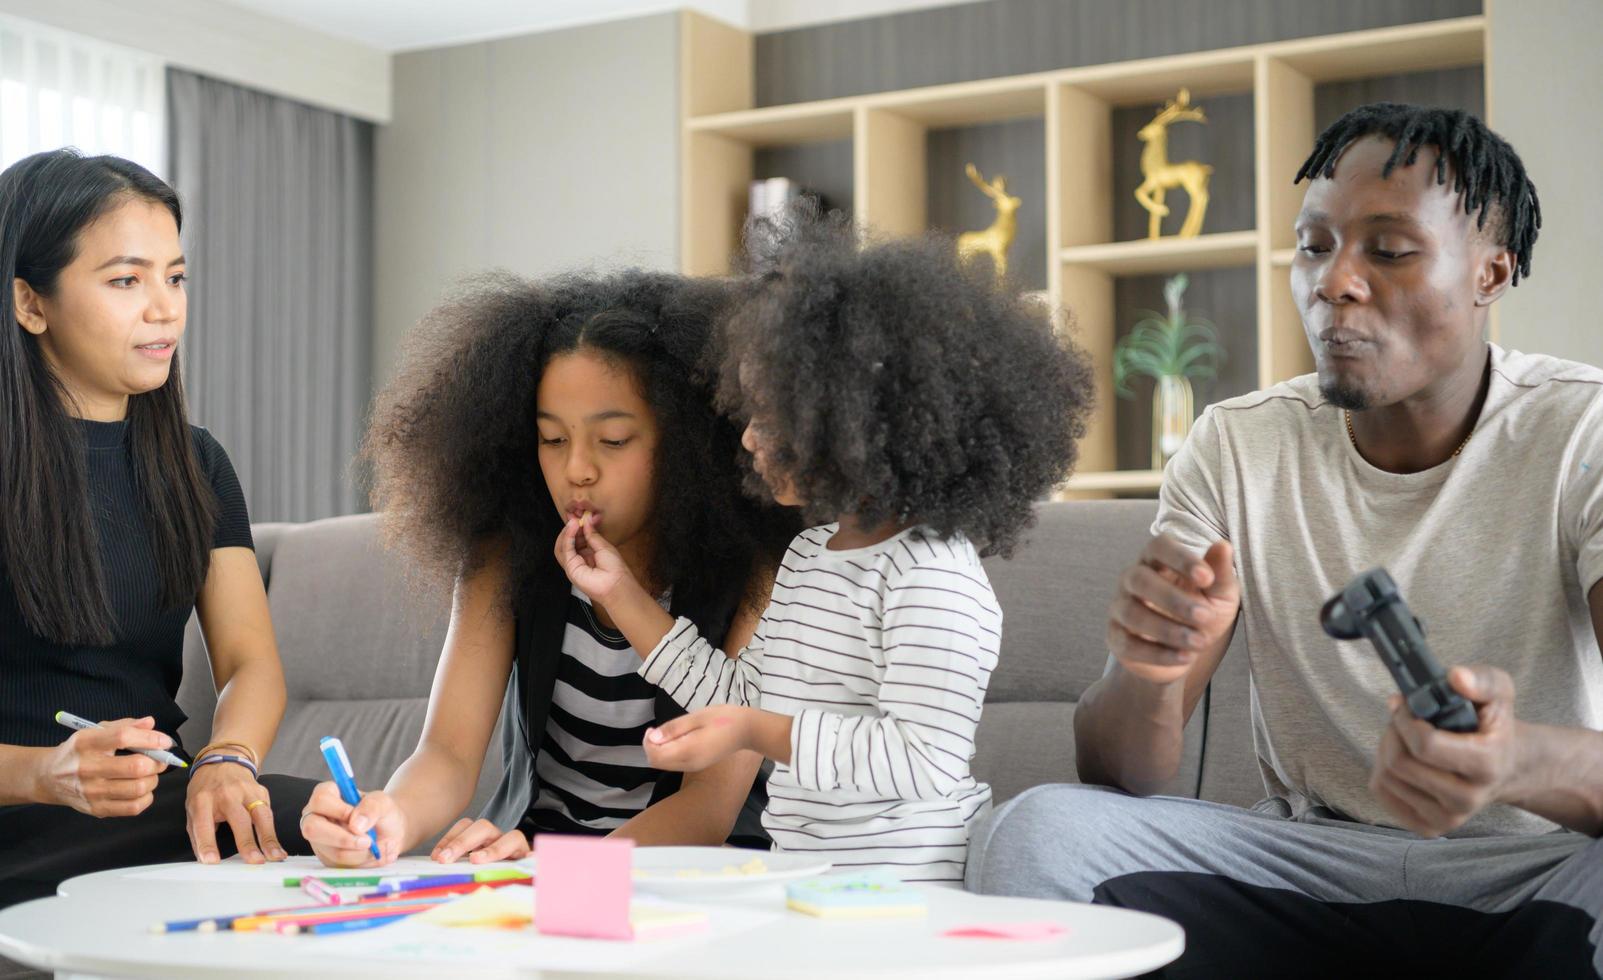 familia asiático-afroamericana relajándose, charlando, pintando y divirtiéndose de vacaciones en la sala de estar de la casa foto